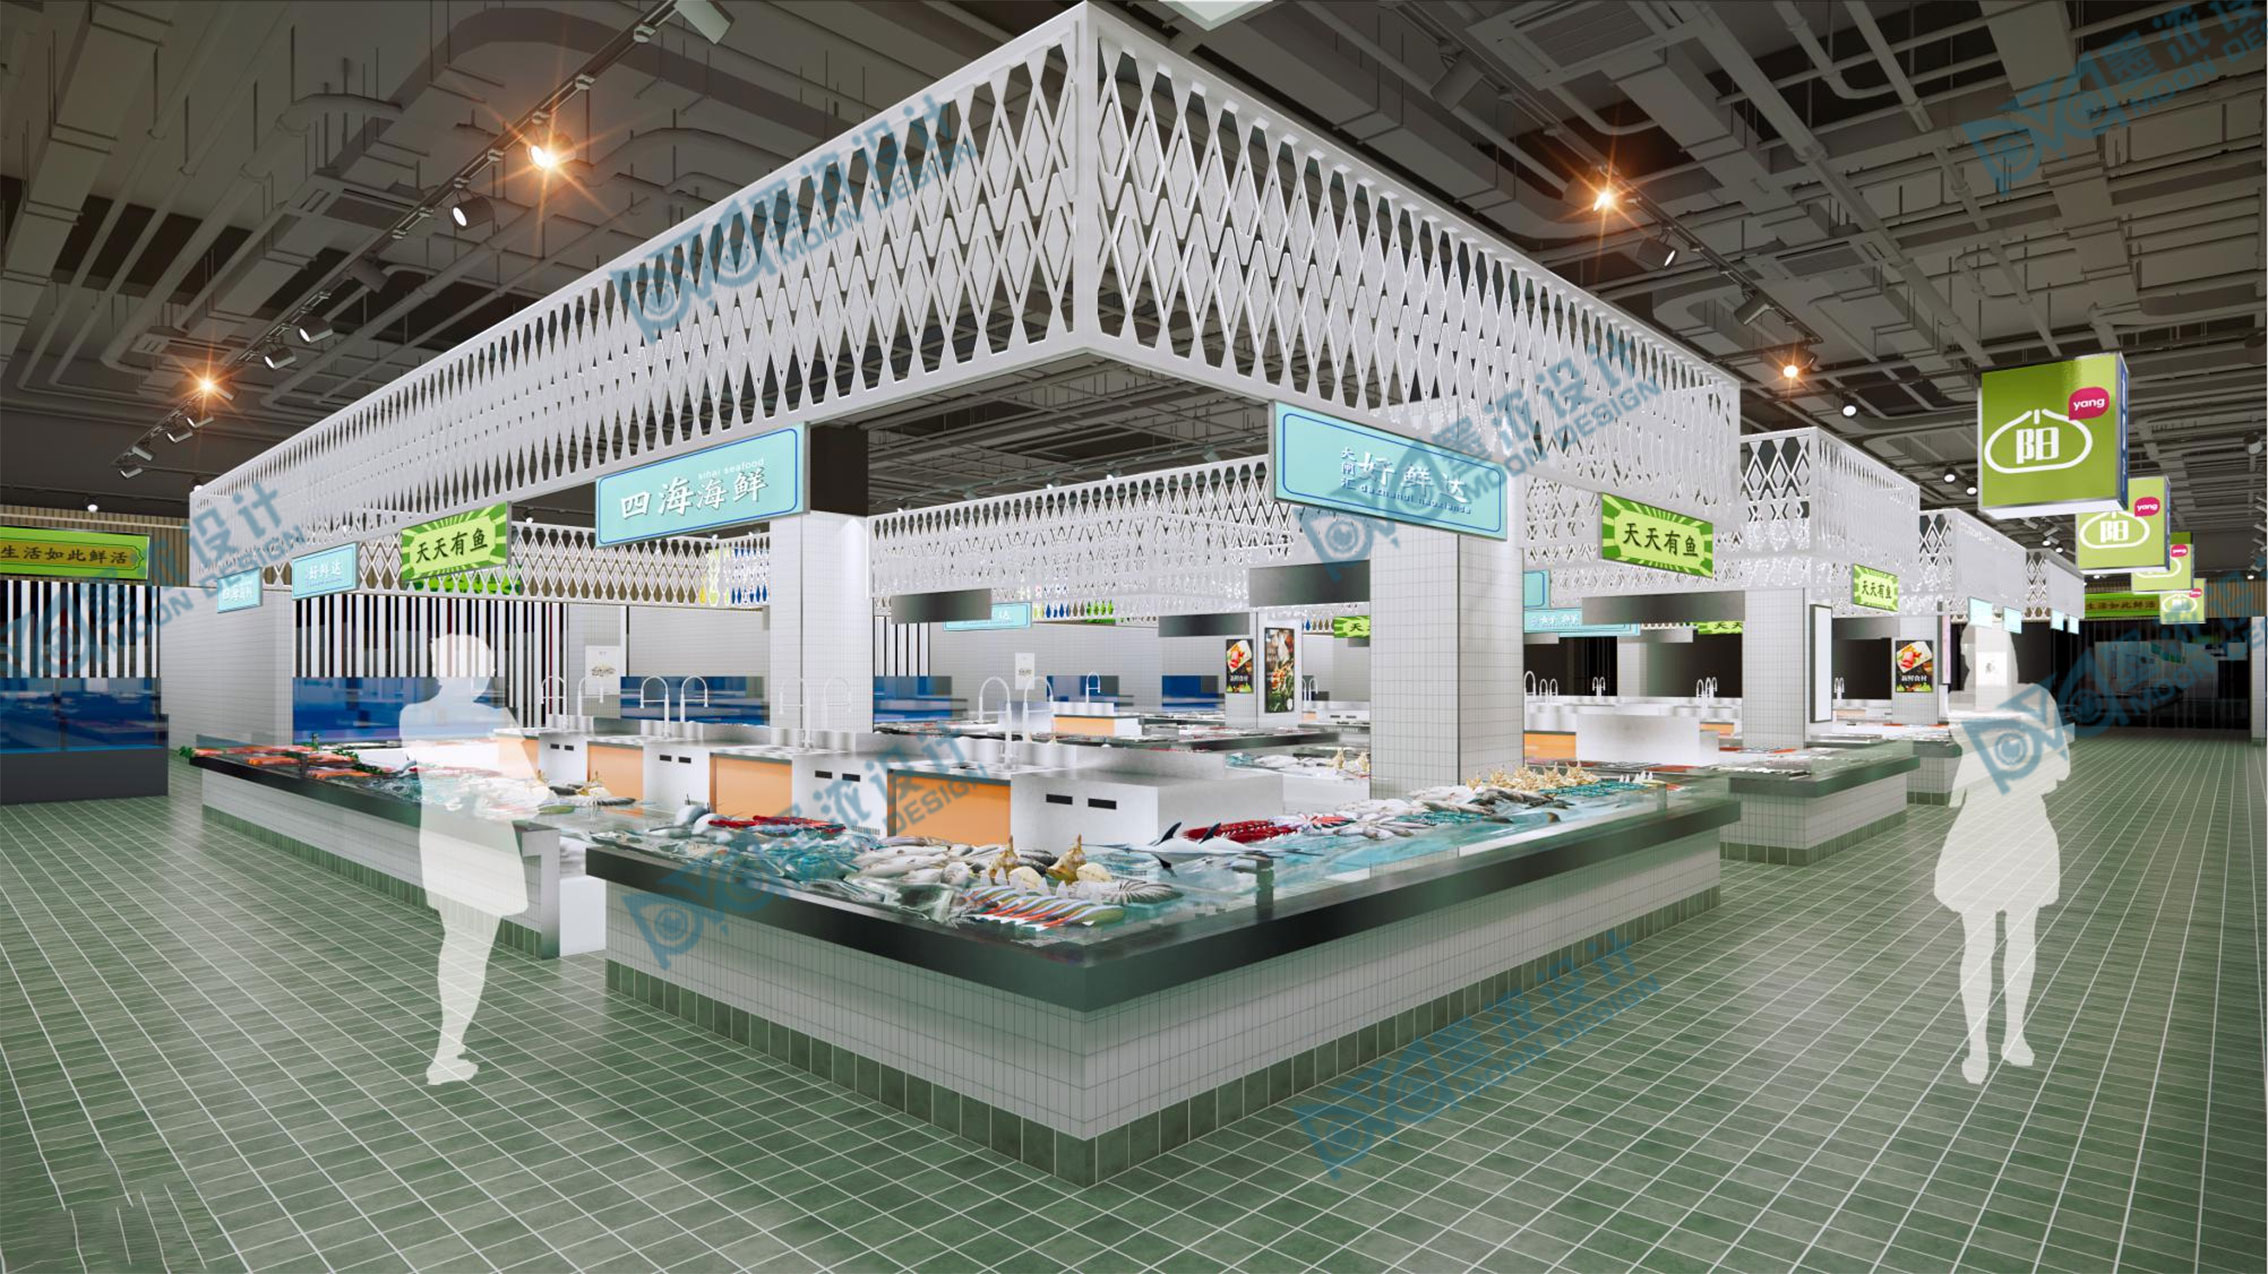 现代超市海鲜水产区3D模型下载【ID:1104020747】_知末3d模型网